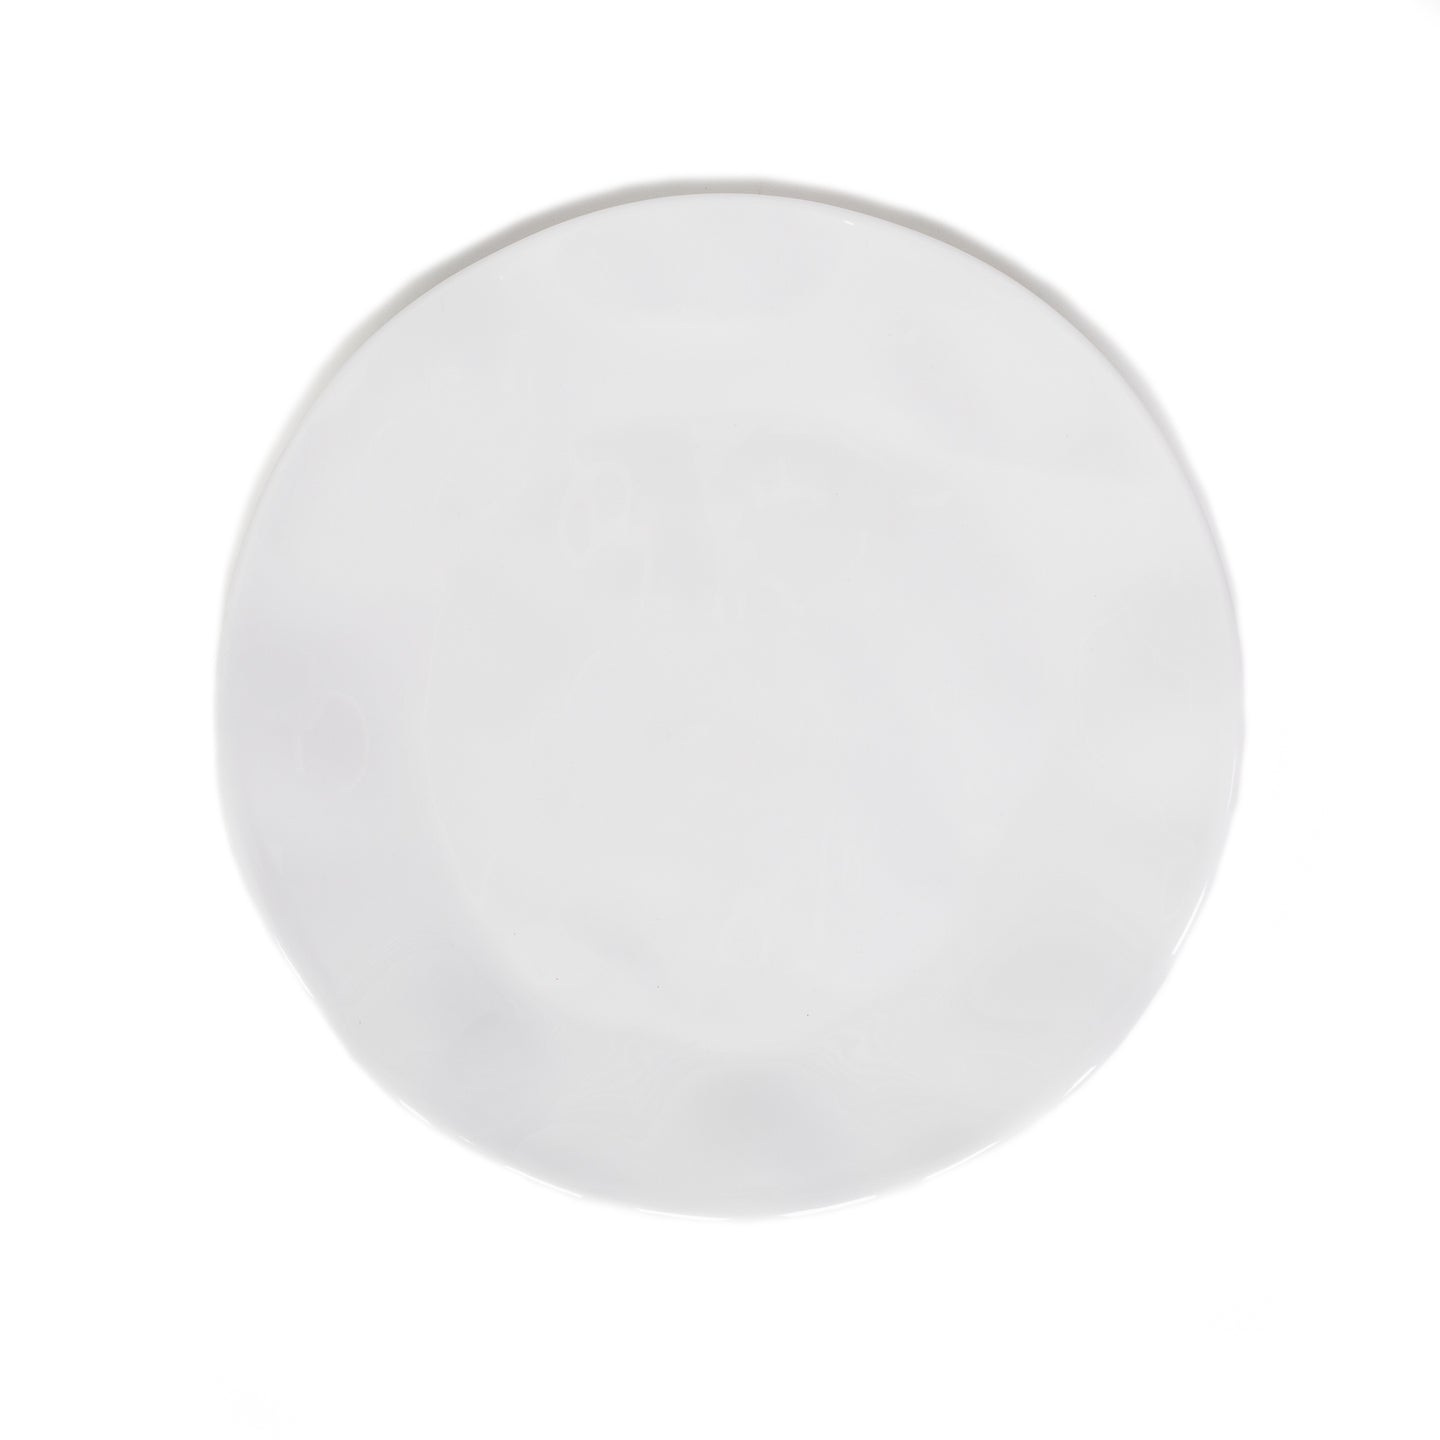 White Melamine Wavy Dinner Plate